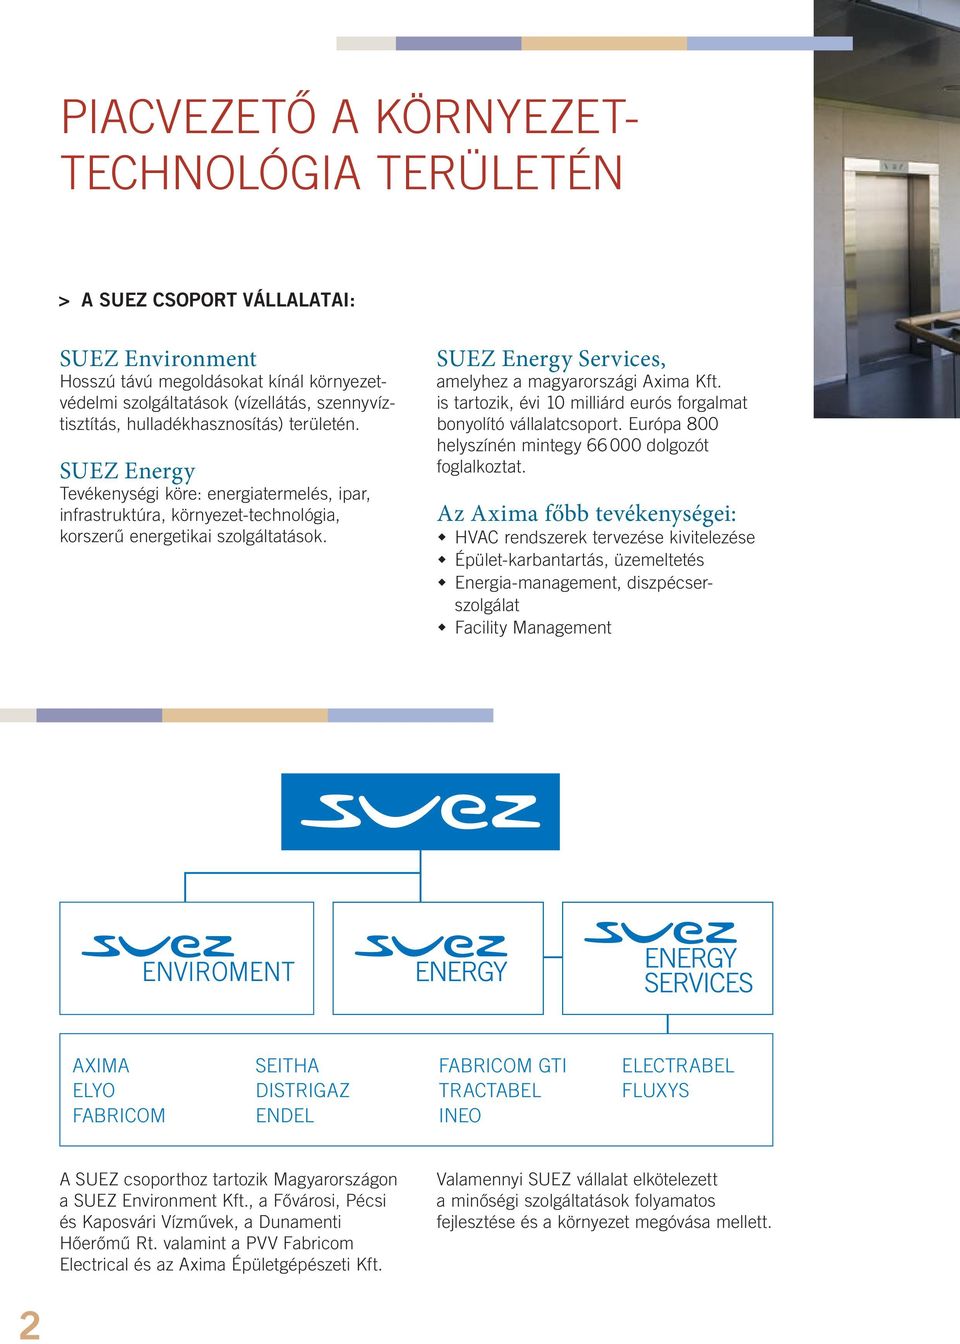 SUEZ Energy Services, amelyhez a magyarországi Axima Kft. is tartozik, évi 10 milliárd eurós forgalmat bonyolító vállalatcsoport. Európa 800 helyszínén mintegy 66 000 dolgozót foglalkoztat.